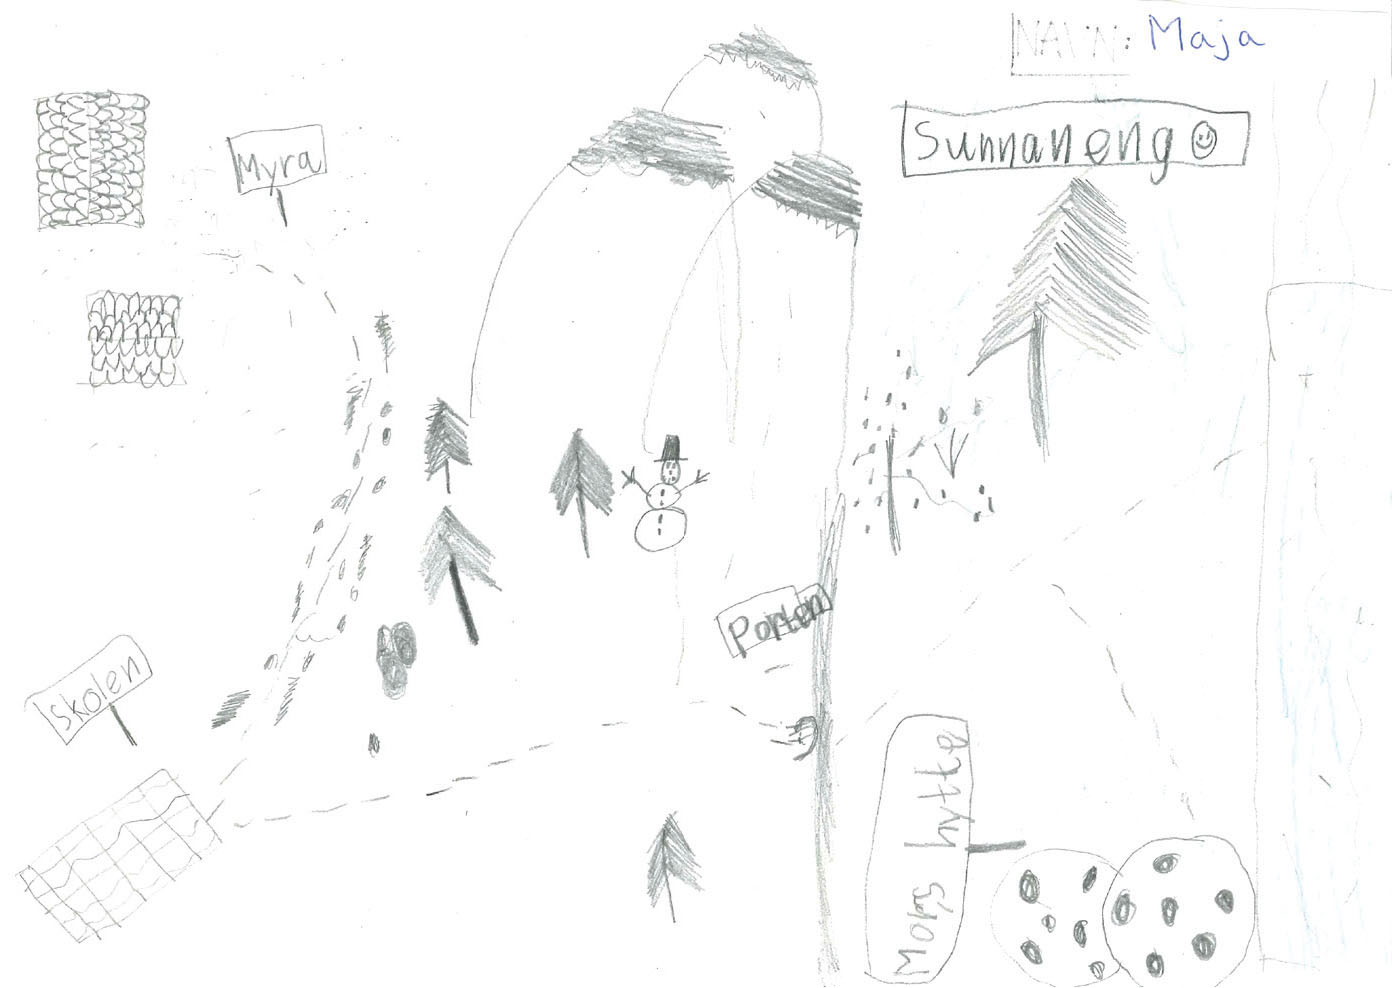 Majas kart. Et nøytralt oversiktskart som viser Sunnaneng til høyre og Myra til venstre. Det er brukt lite farge.